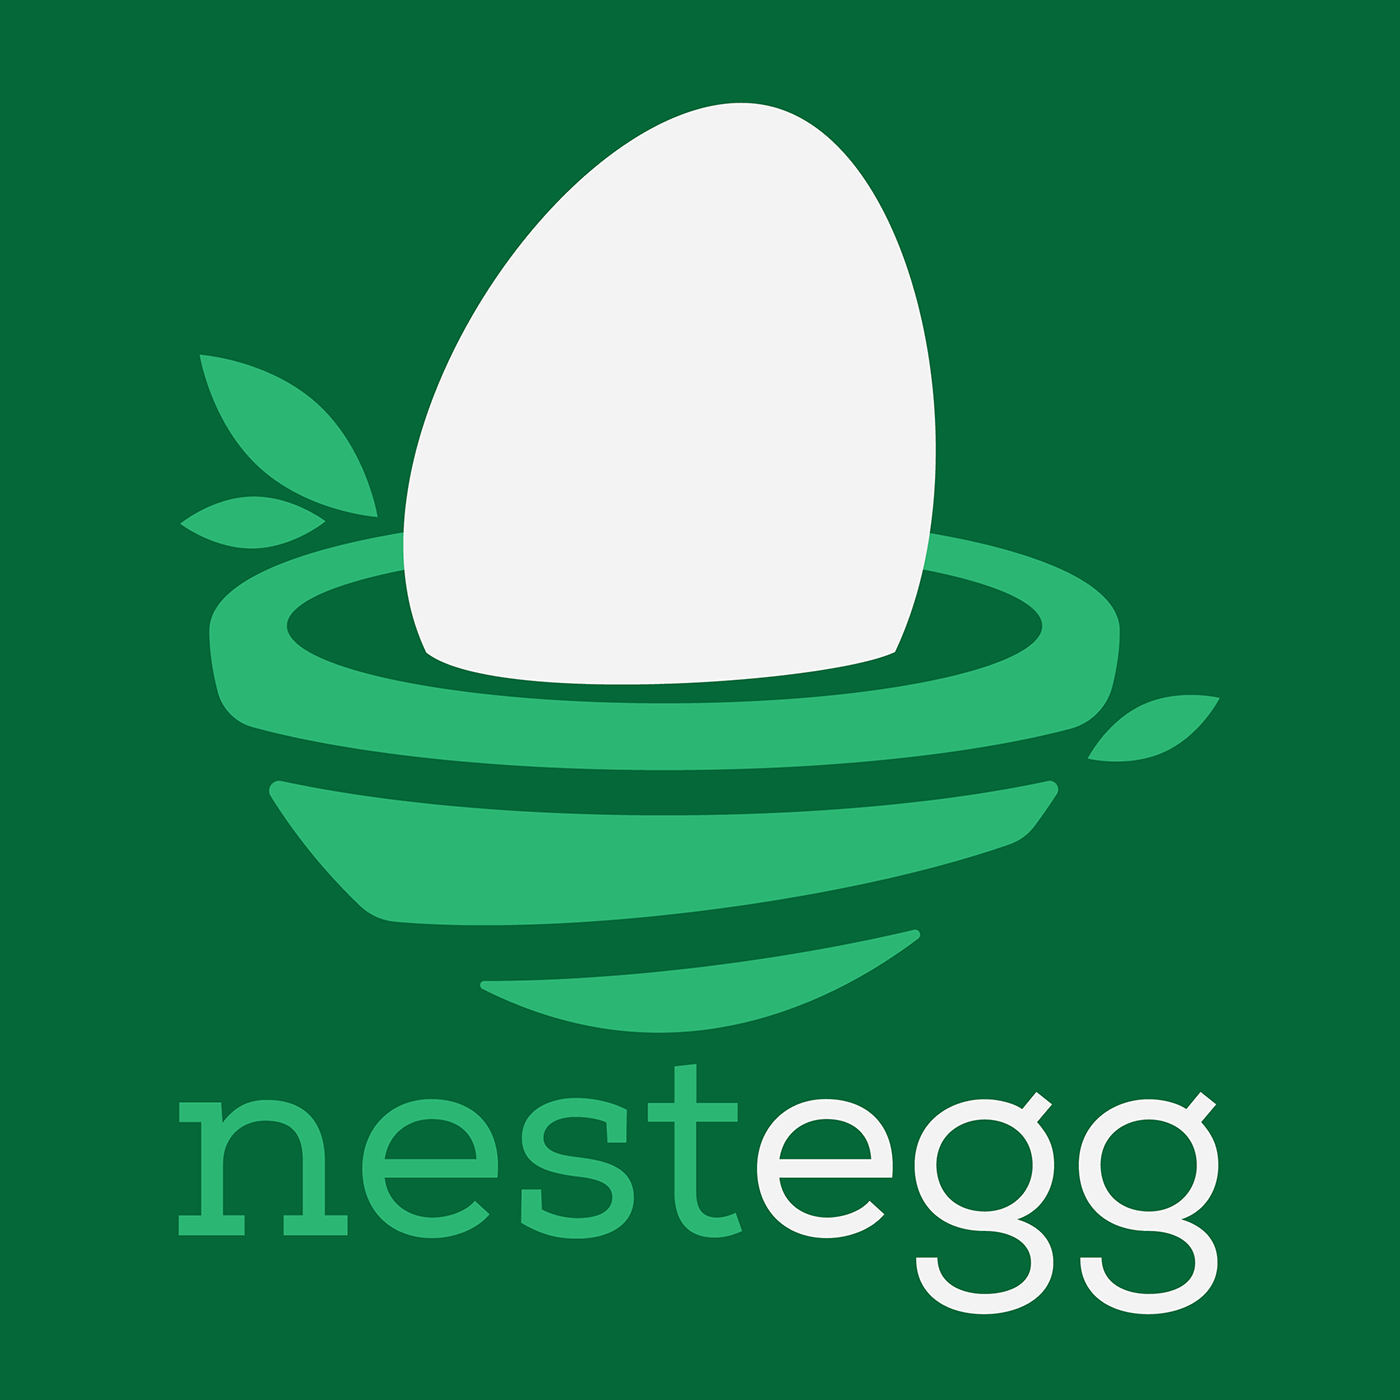 branding  finance logo money Nest Egg savings